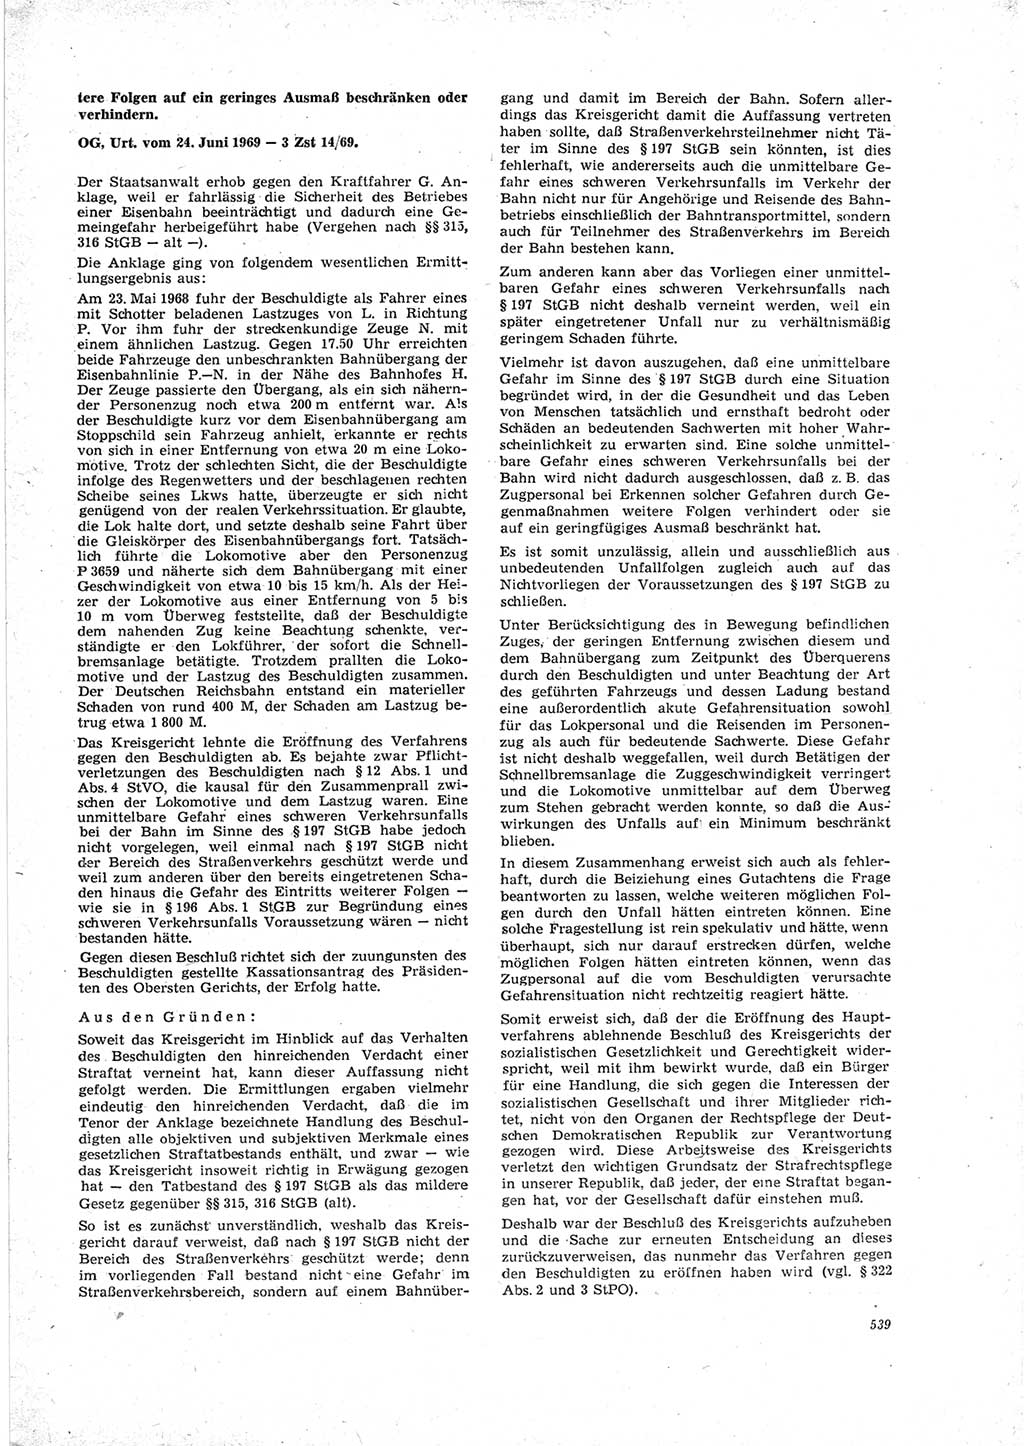 Neue Justiz (NJ), Zeitschrift für Recht und Rechtswissenschaft [Deutsche Demokratische Republik (DDR)], 23. Jahrgang 1969, Seite 539 (NJ DDR 1969, S. 539)